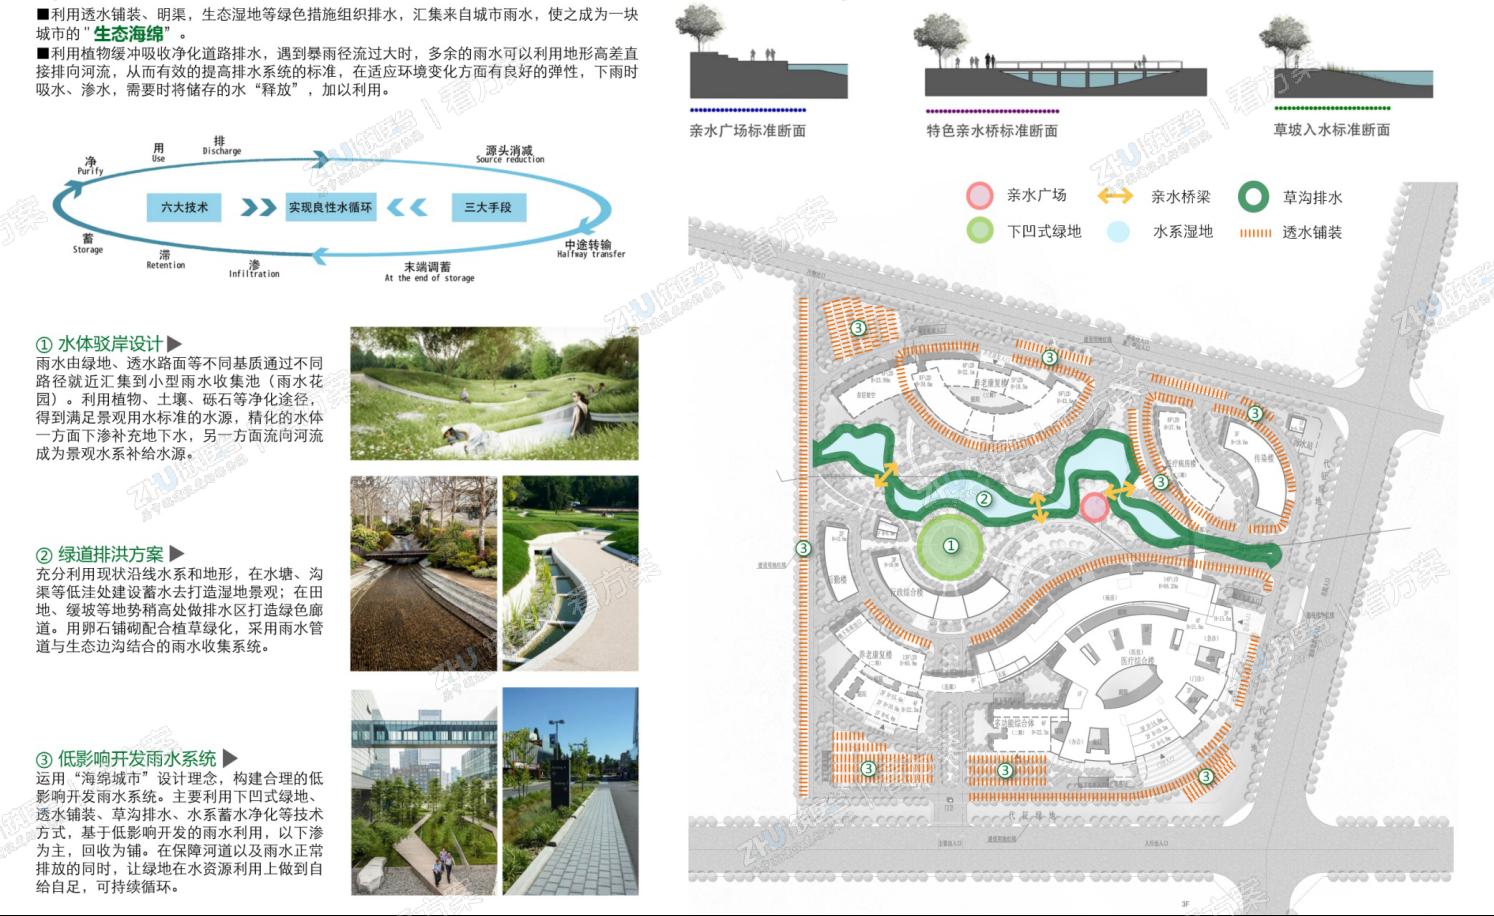 医院景观空间分析图：以建设海绵城市标准建设医院